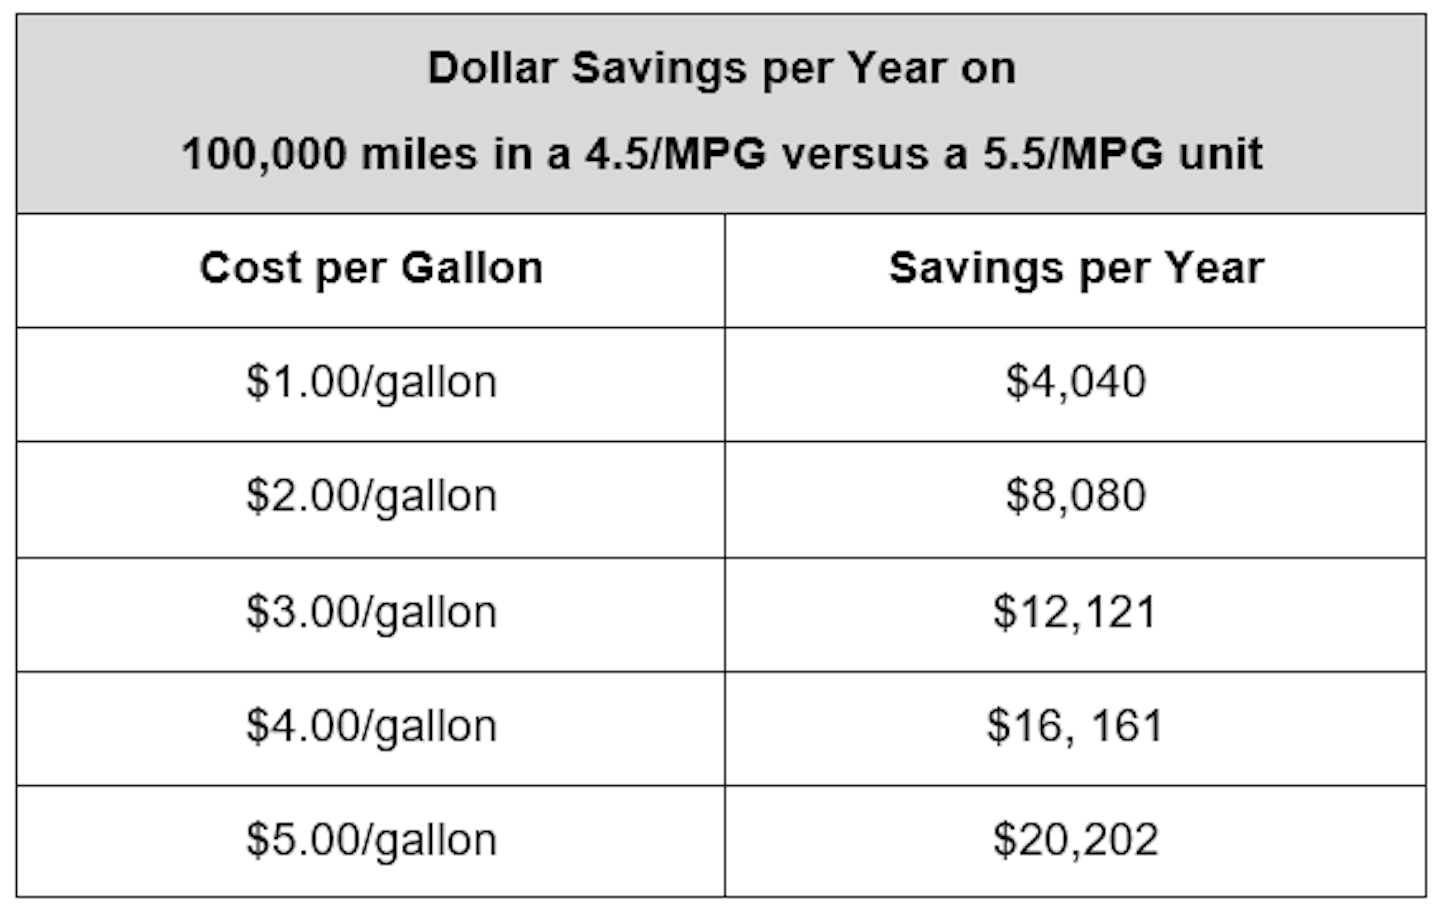 Fig. 1: Dollar savings per year comparison